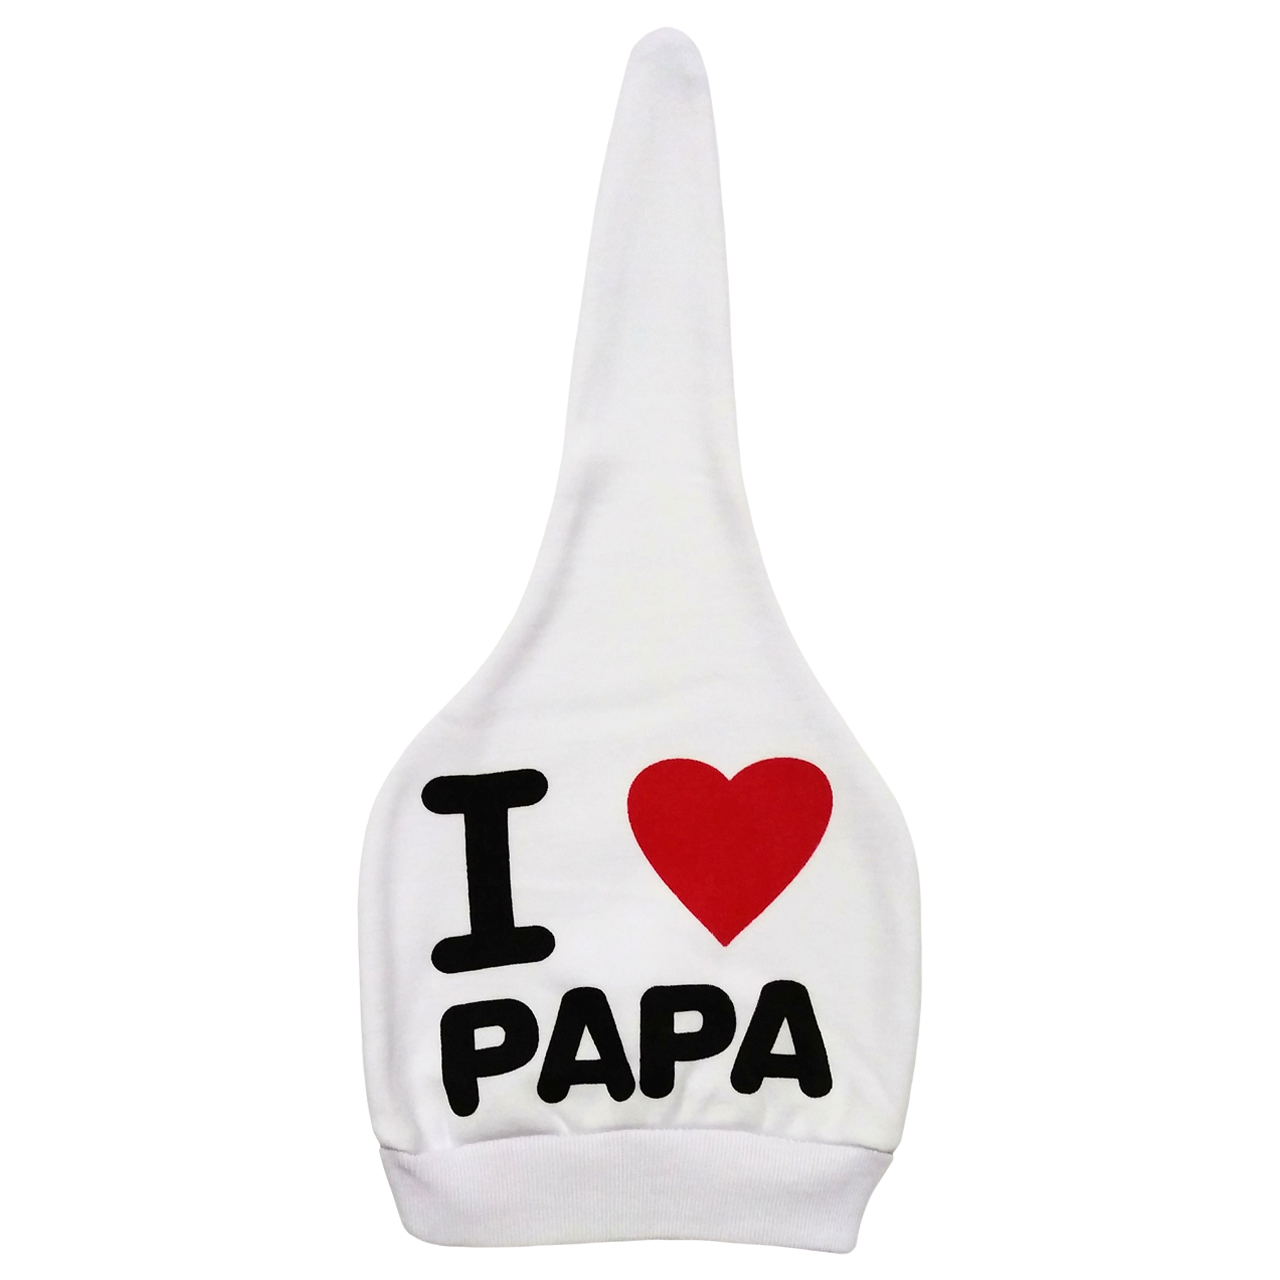 آنباکس کلاه نوزادی طرح I Love Papa کد M335 توسط مرجان رضازاده در تاریخ ۱۷ آبان ۱۴۰۰